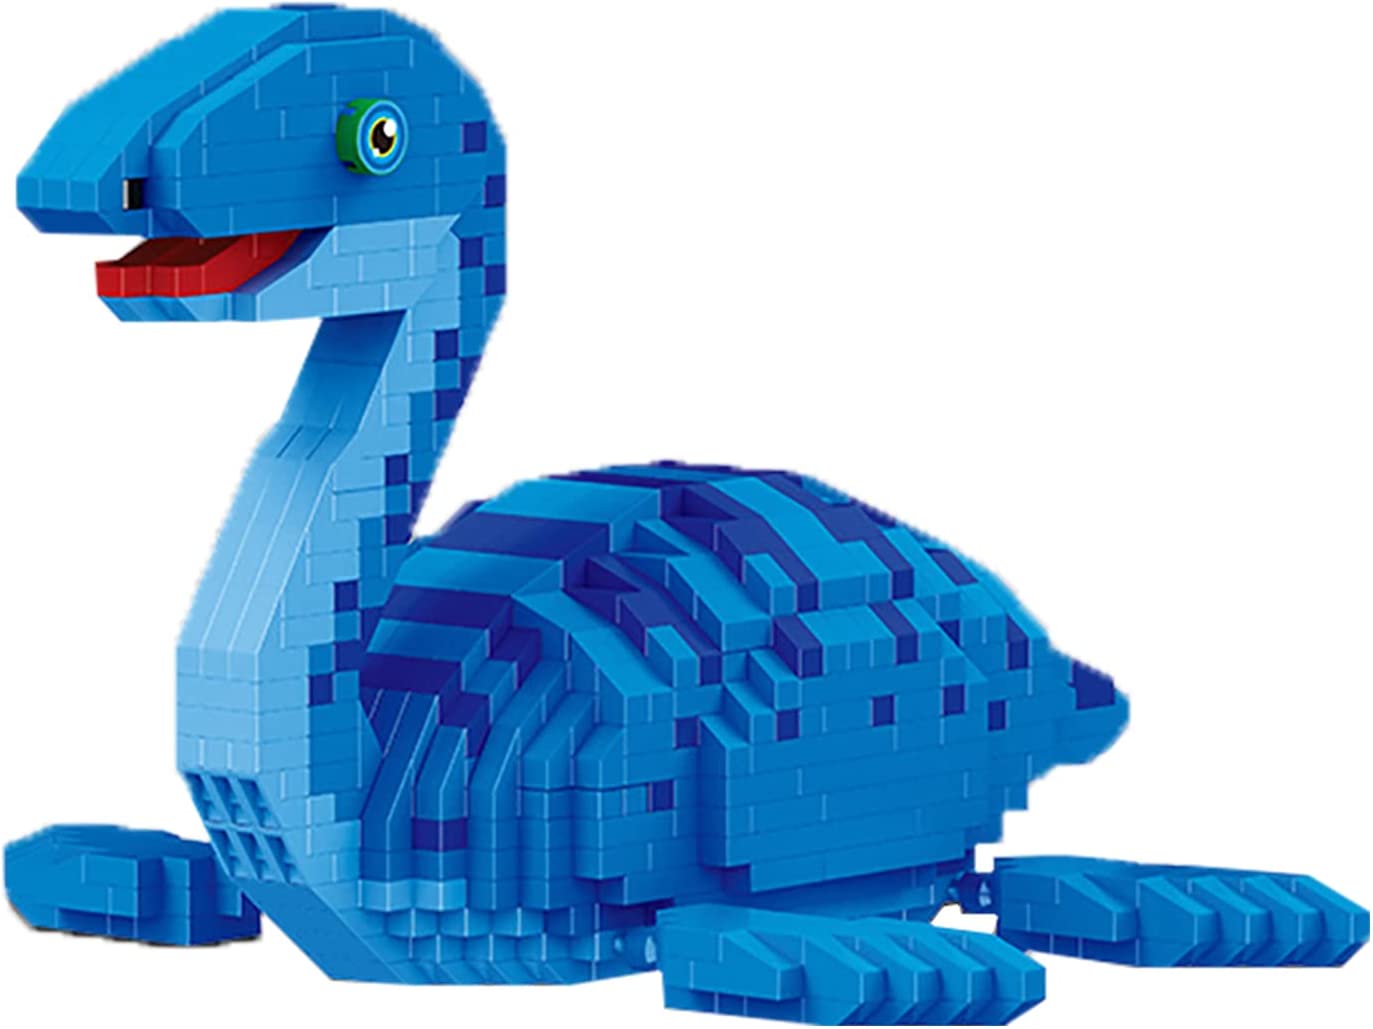 Конструктор Balody 3D из миниблоков Динозавр Плезиозавр, 1004 элементов BA18403 конструктор 3d из миниблоков balody футболист харри кейн 134 дет ba20006